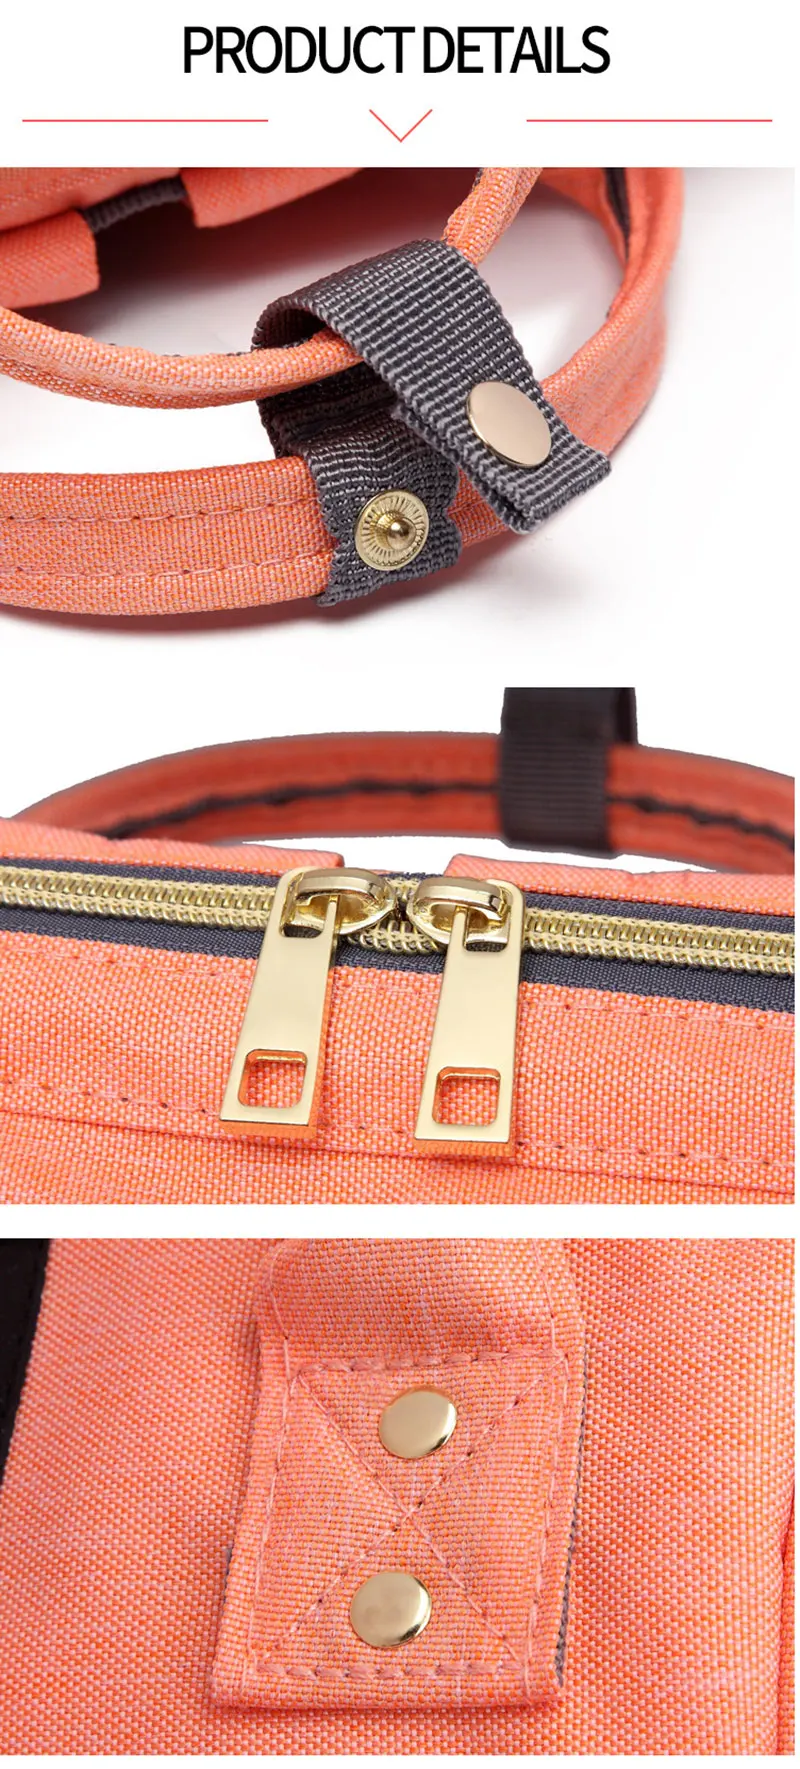 2019 детские пеленки сумка с USB Интерфейс большой Ёмкость водонепроницаемый подгузник сумка Наборы Мумия материнства путешествия рюкзак